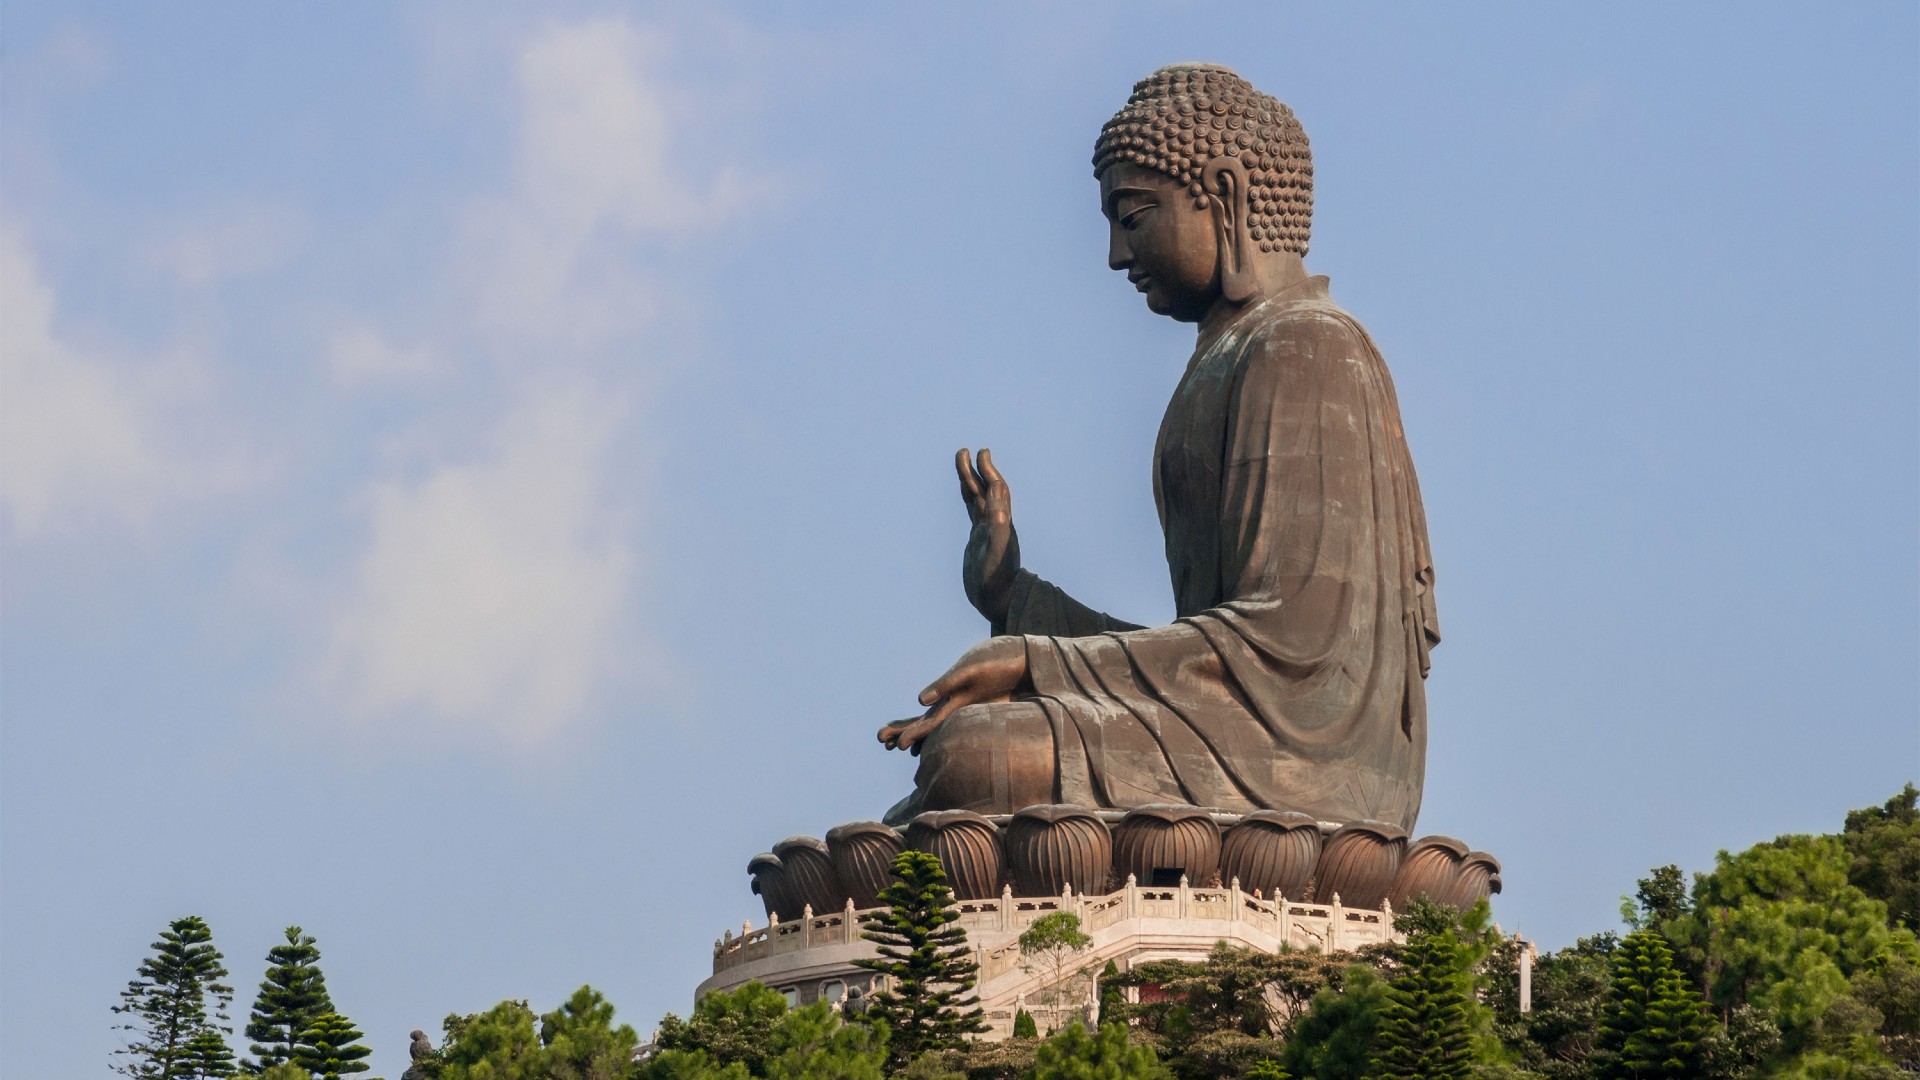 The Tian Tan Buddha statue at Ngong Ping, Lantau Island, Hong Kong